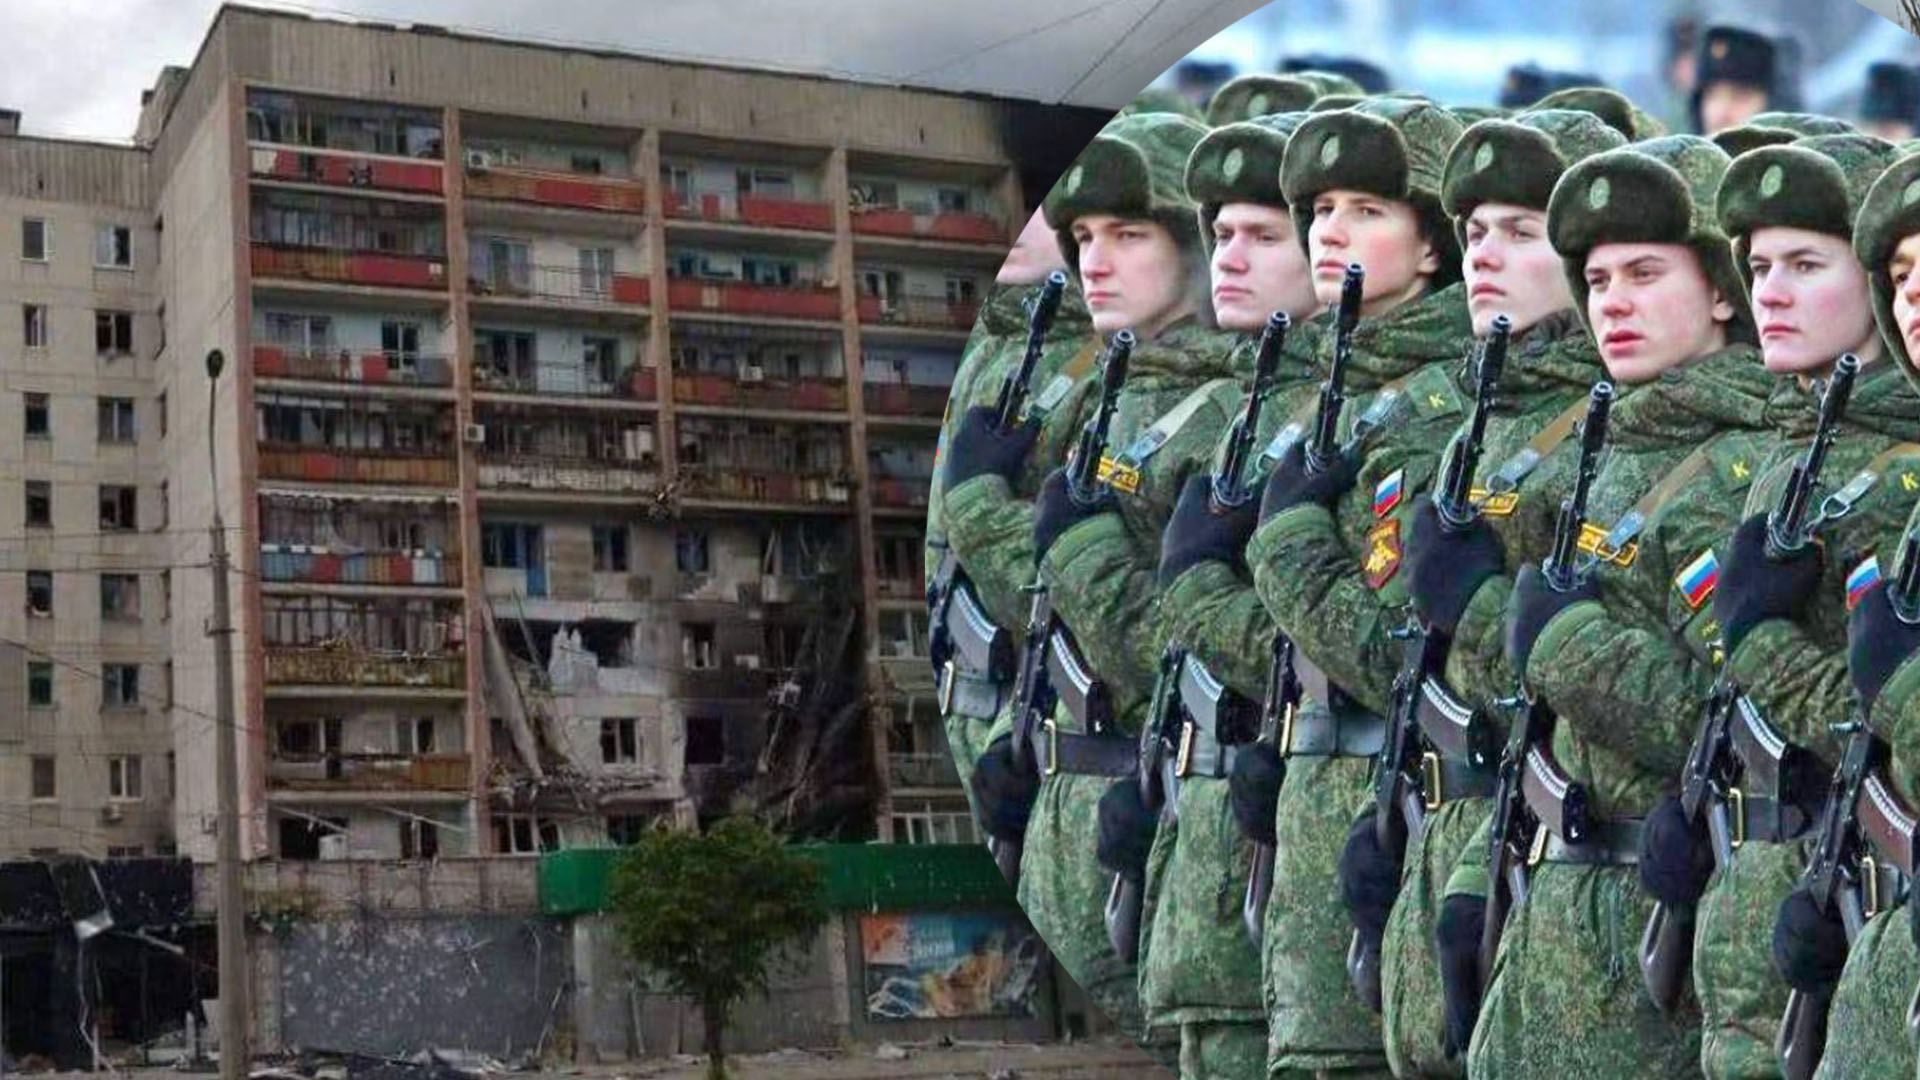 Сєвєродонецьк напів оточено, але ЗСУ про відступ не думають: командир батальйону "Свобода"